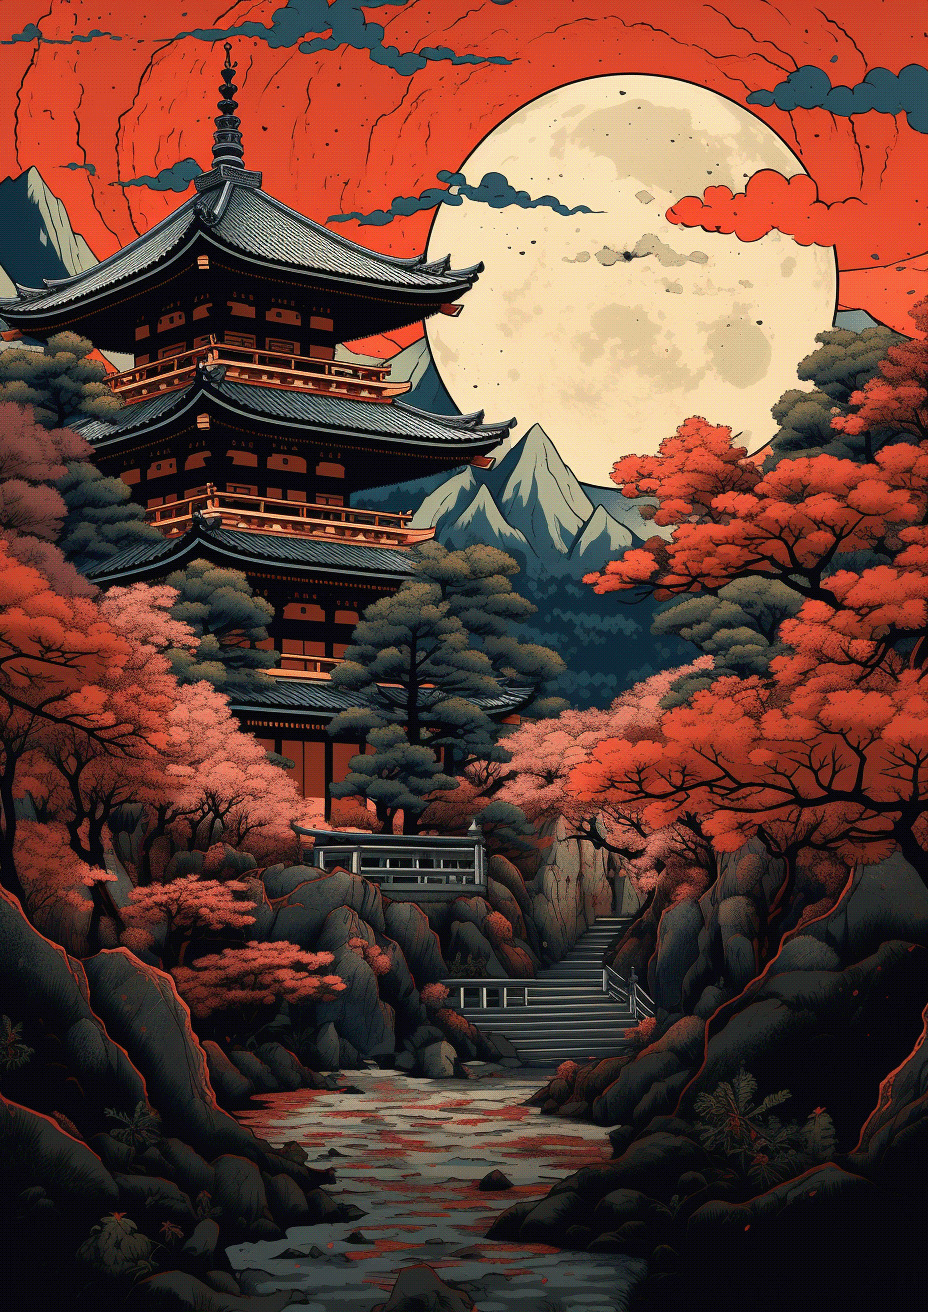 samurai japan temple japanese japanese style japanese art Japanese Culture